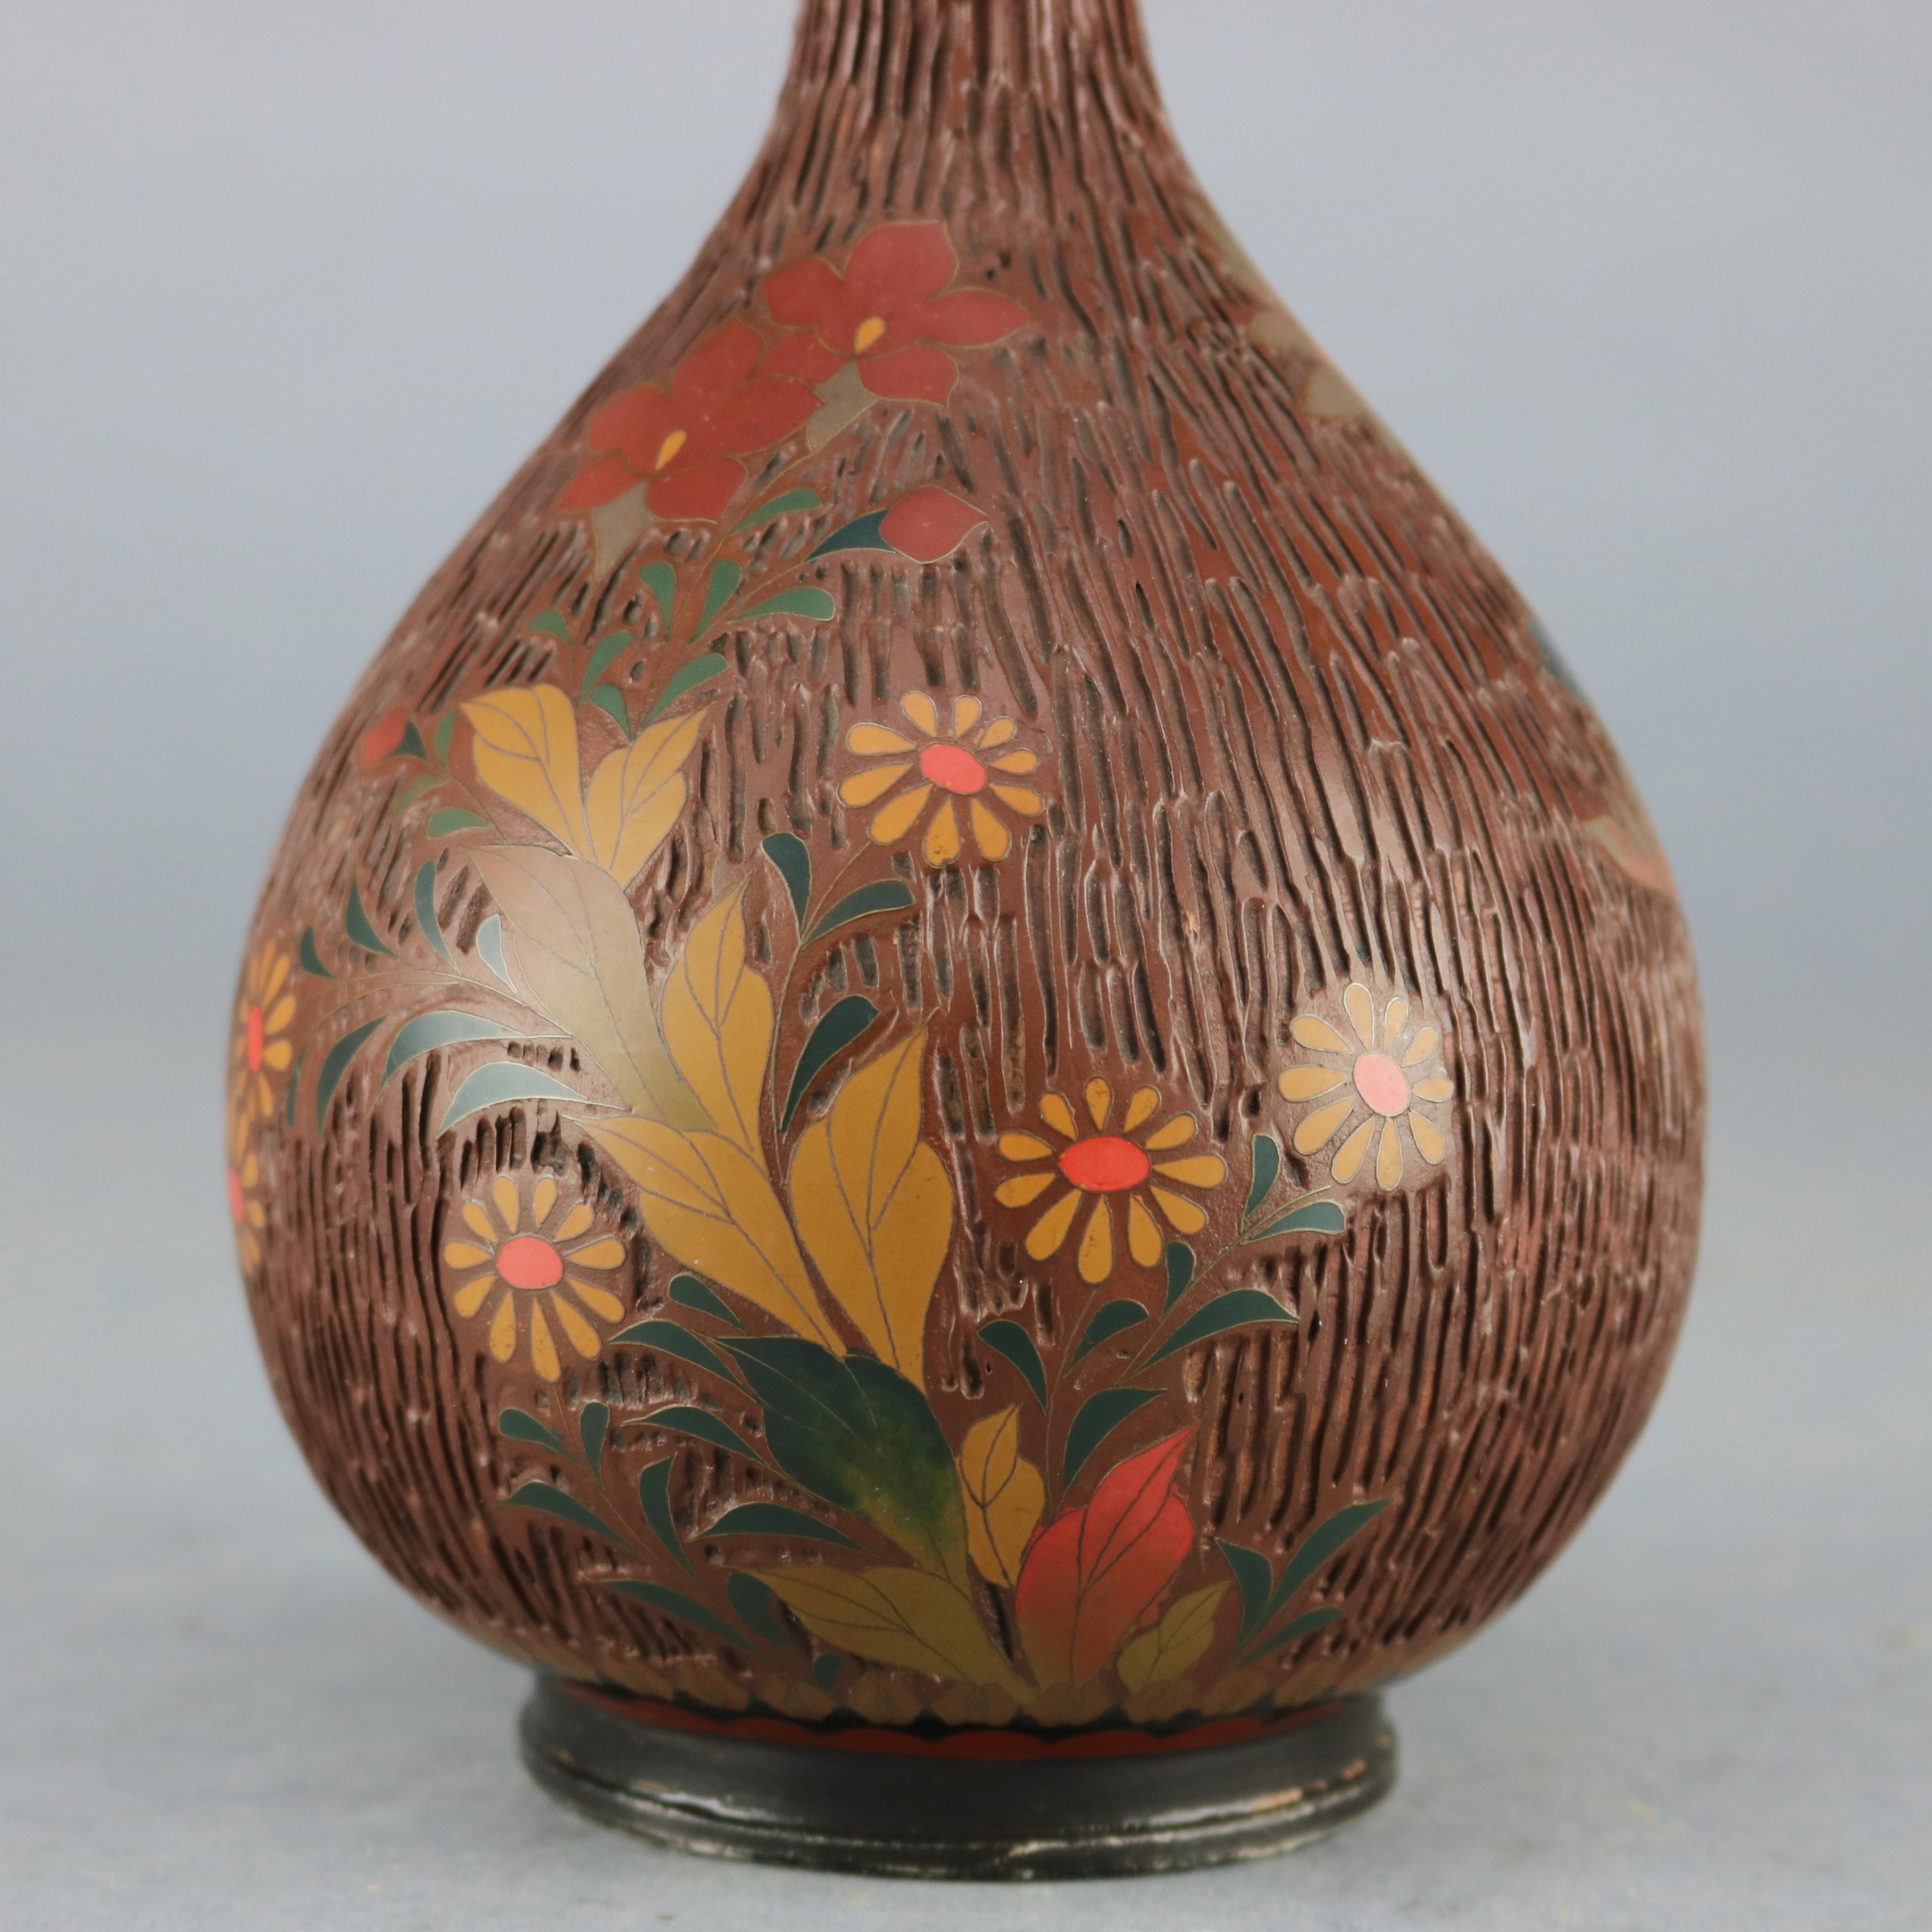 Eine antike chinesische Cloisonne Knospe Vase bietet emaillierte Metallkonstruktion all-over strukturierte Holzrinde Design mit verzierten Kragen, Elemente des Naturalist Movement, um 1990. 

Maße: 11,75